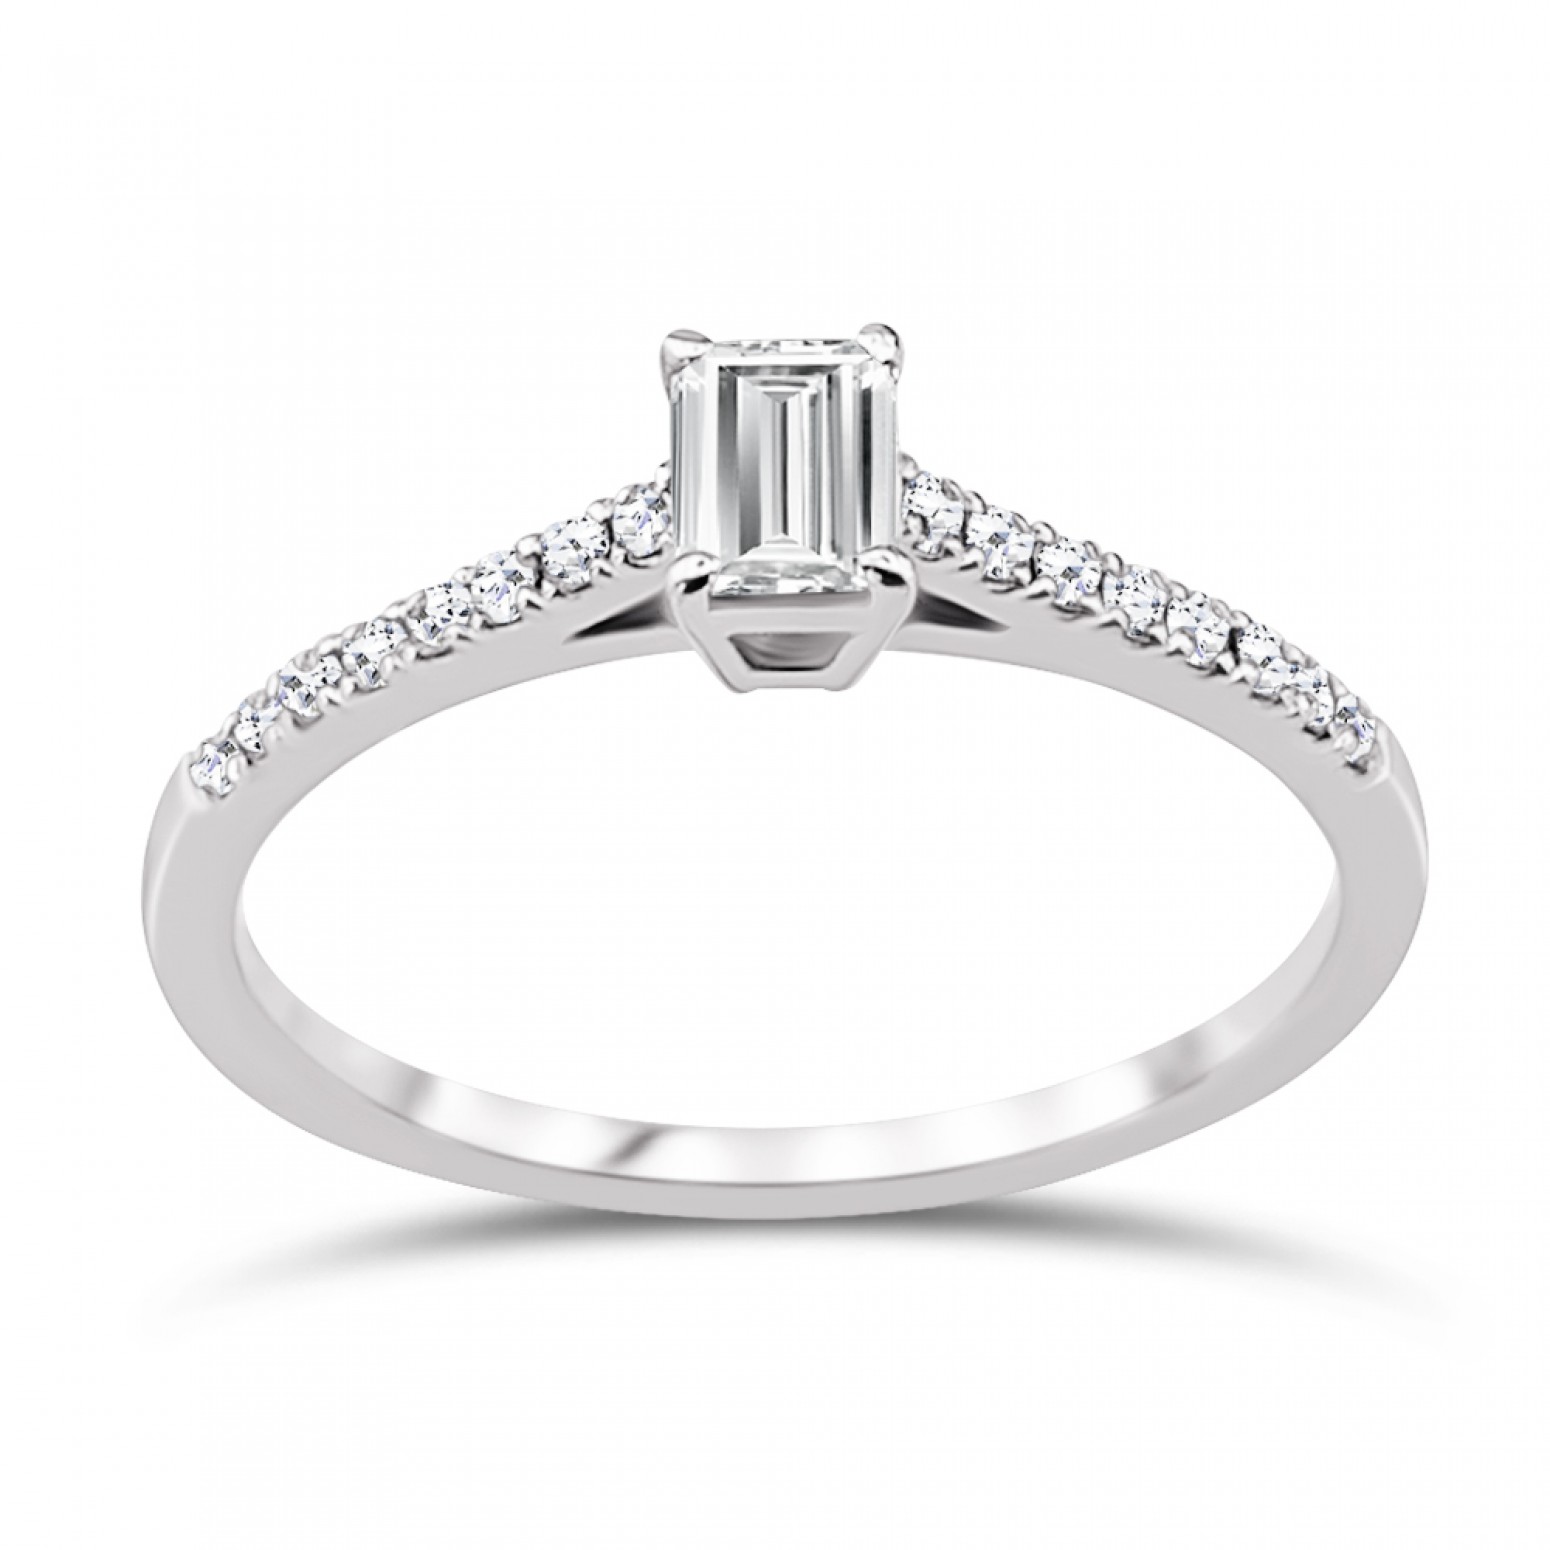 Μονόπετρο δαχτυλίδι Κ18 λευκόχρυσο με κεντρικό διαμάντι 0.31ct, VVS1, E από το IGL da3609 ΔΑΧΤΥΛΙΔΙΑ ΑΡΡΑΒΩΝΑ Κοσμηματα - chrilia.gr